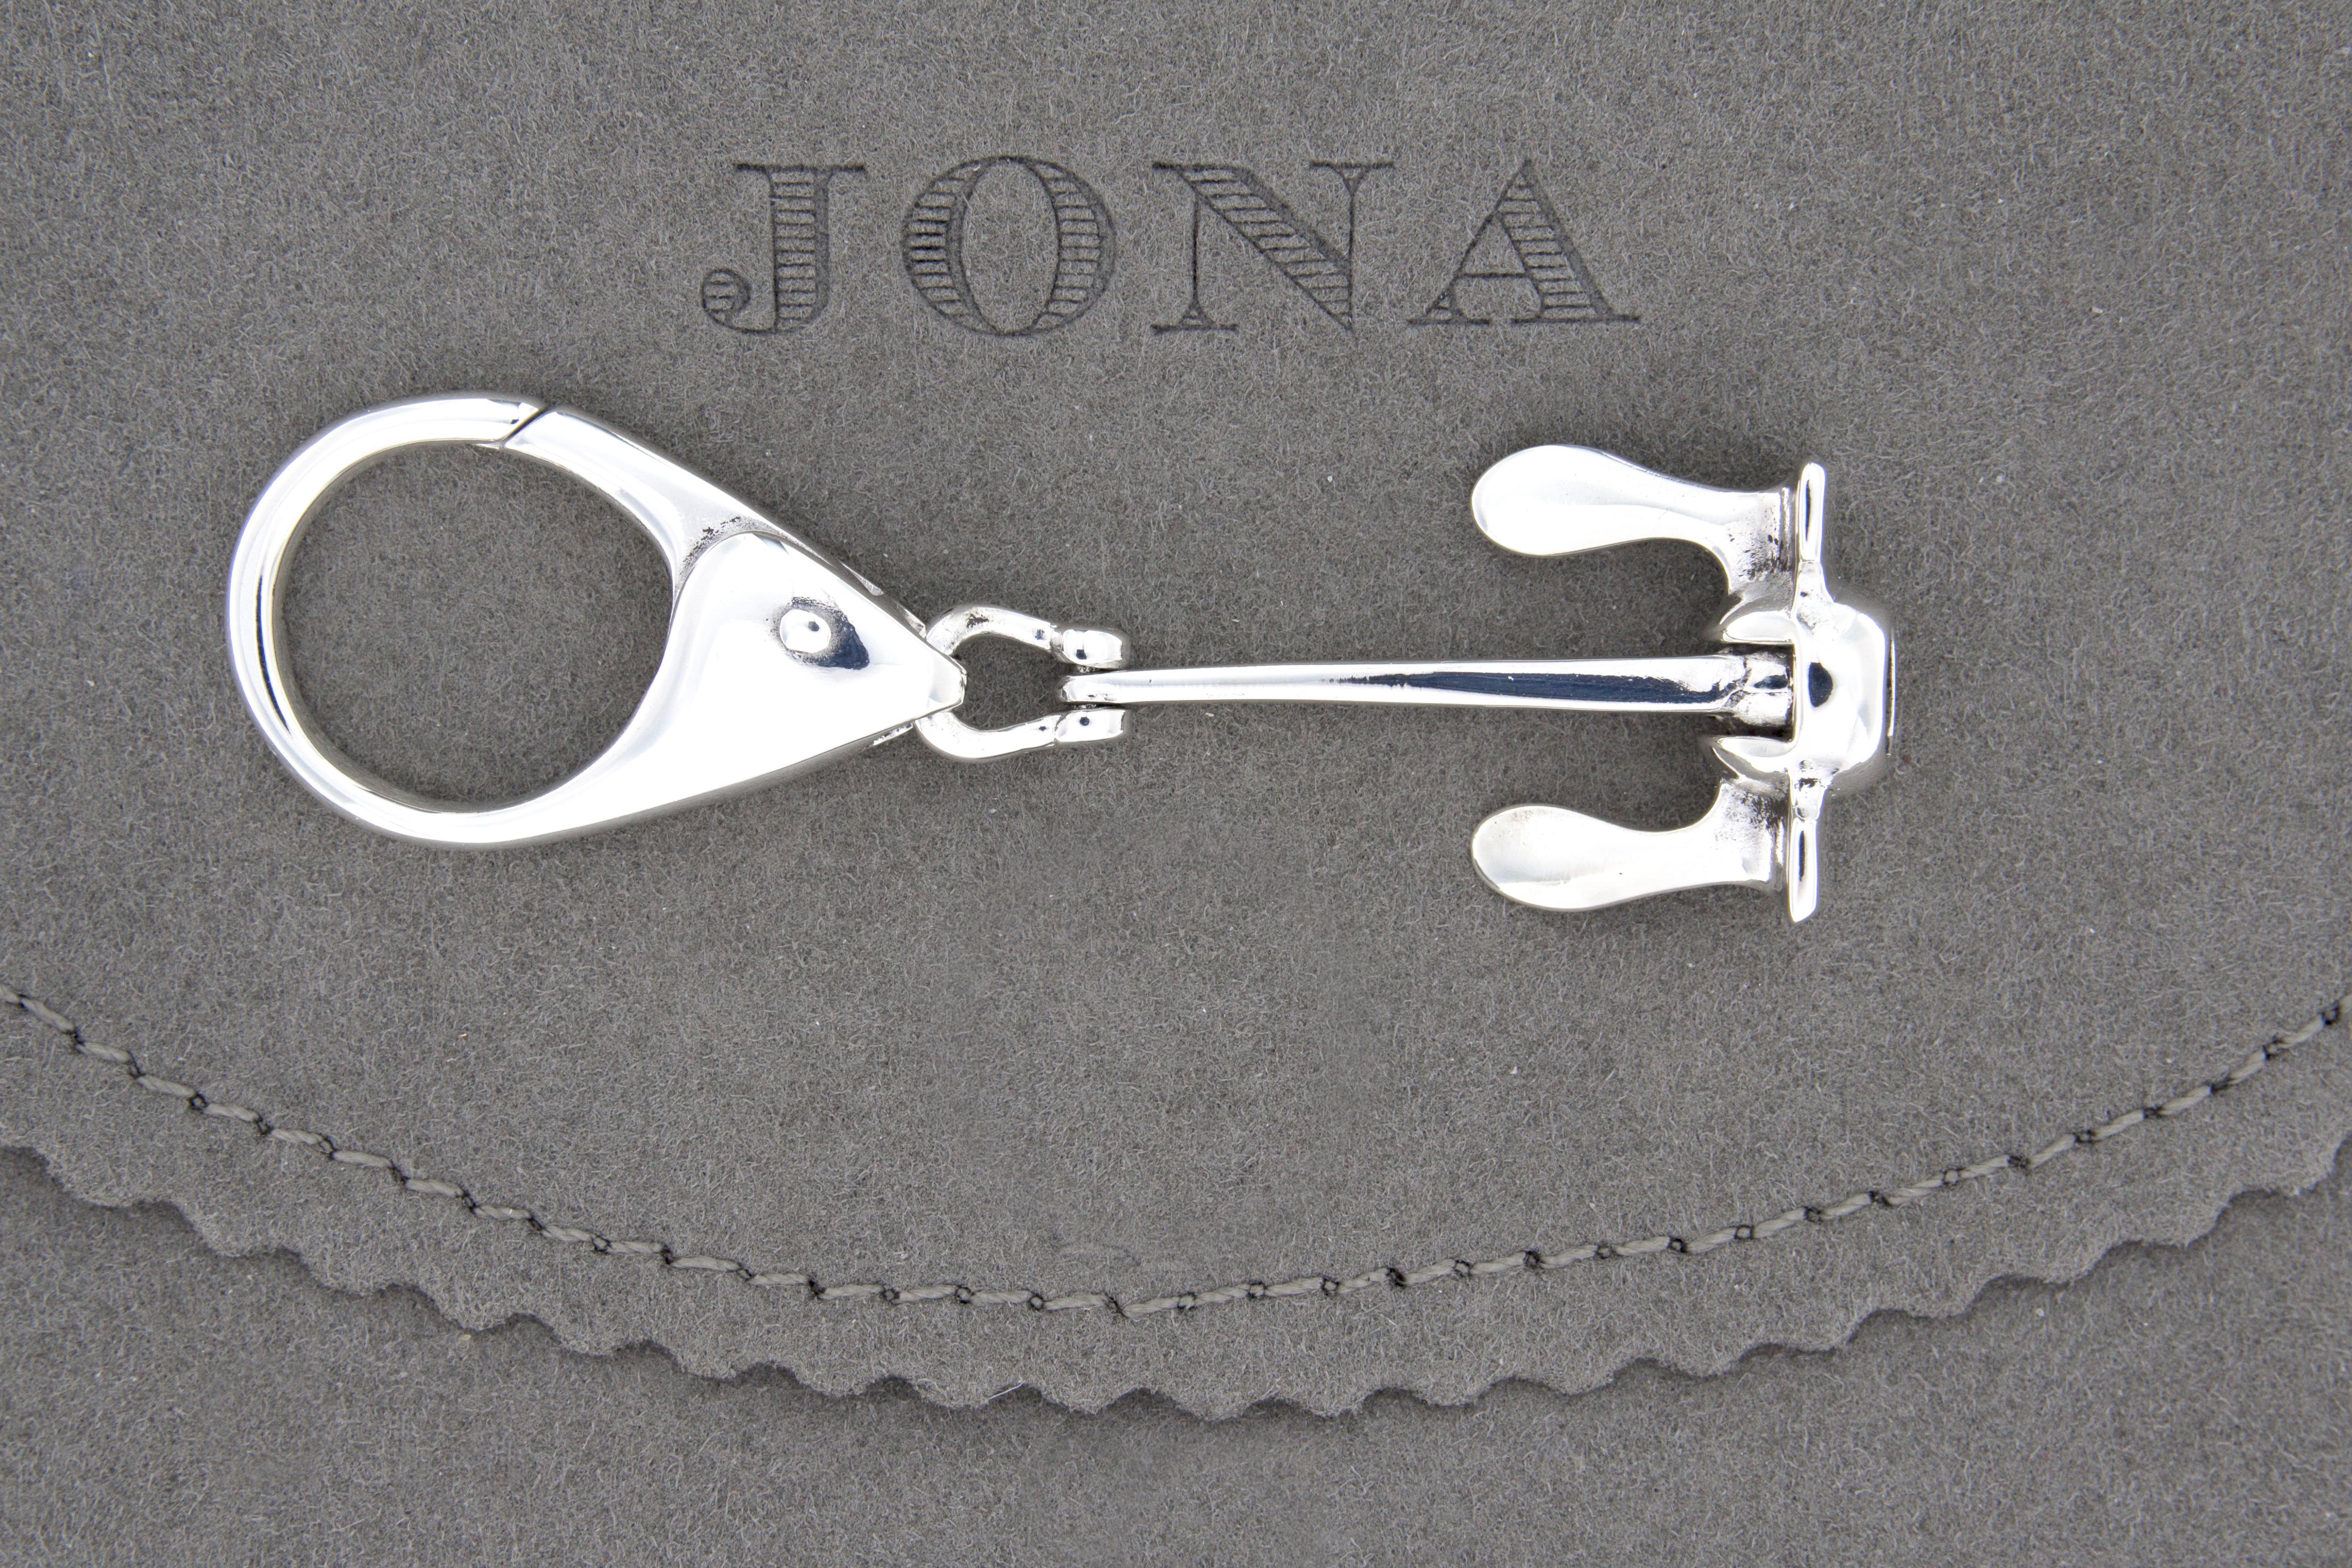 Collection design Alex Jona, fabriqué à la main en Italie, porte-clés ancre de hall en argent sterling rhodié. L'ancre se déplace de haut en bas comme une véritable ancre Danforth.
Dimensions de l'ancre : L 1.82 in/ 46.37 mm x L 0.87 in/ 22.34 mm x